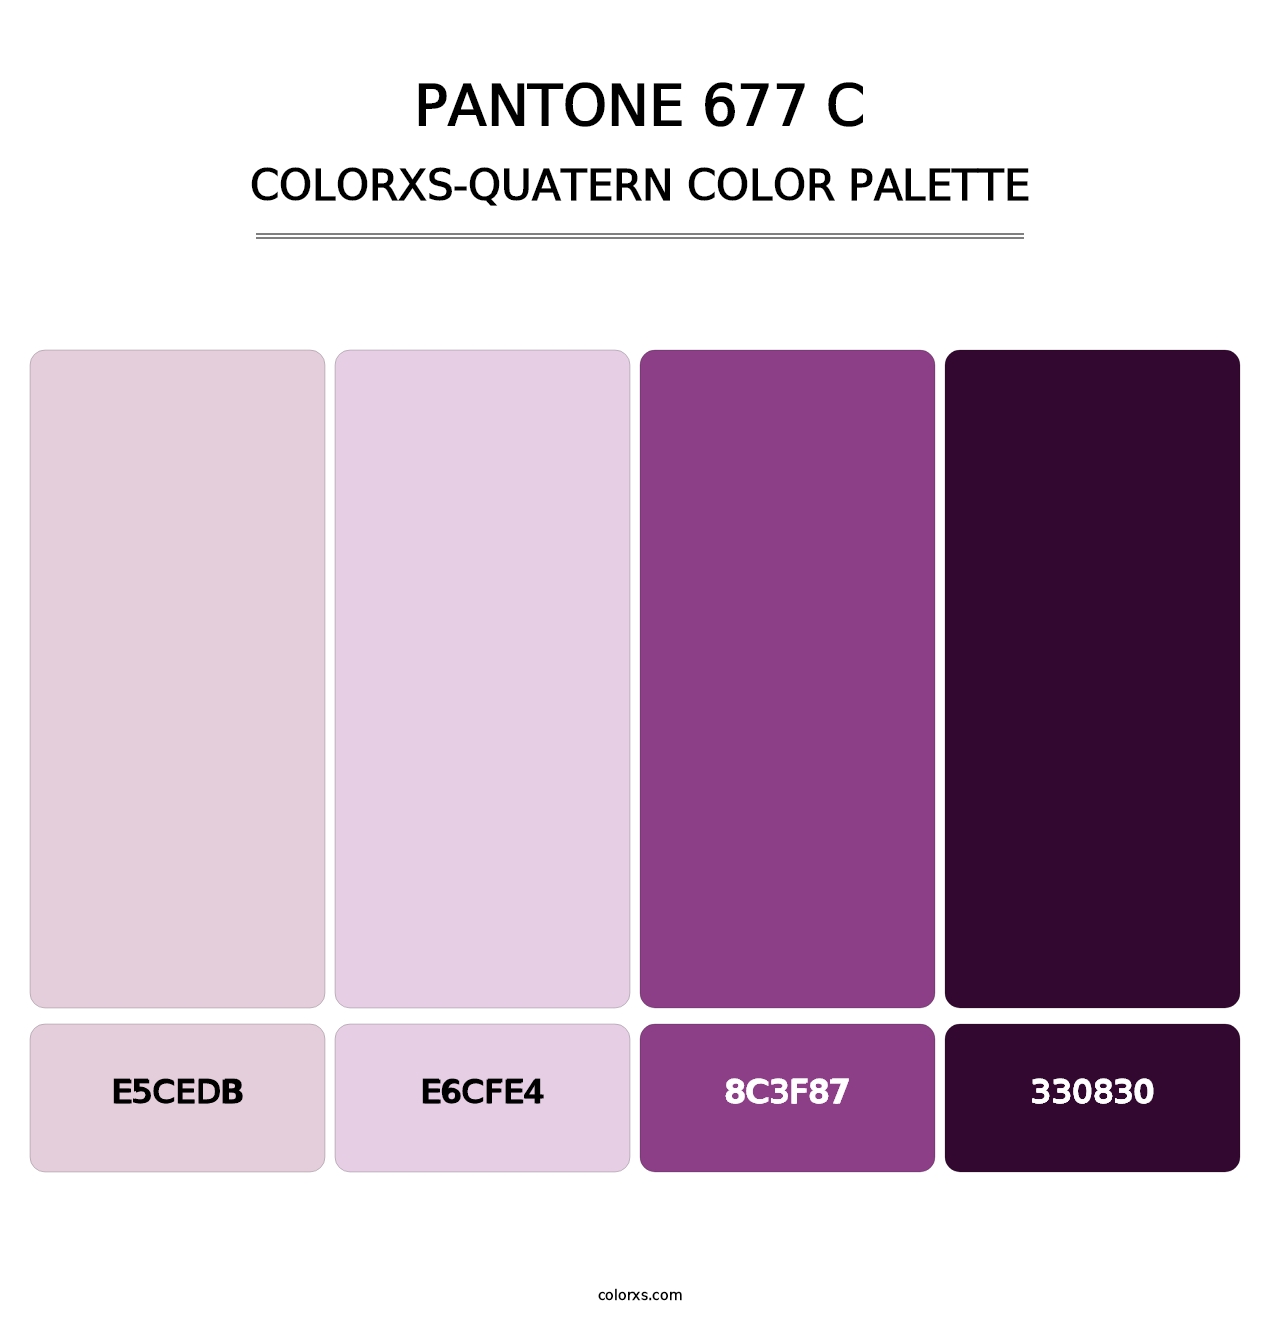 PANTONE 677 C - Colorxs Quatern Palette